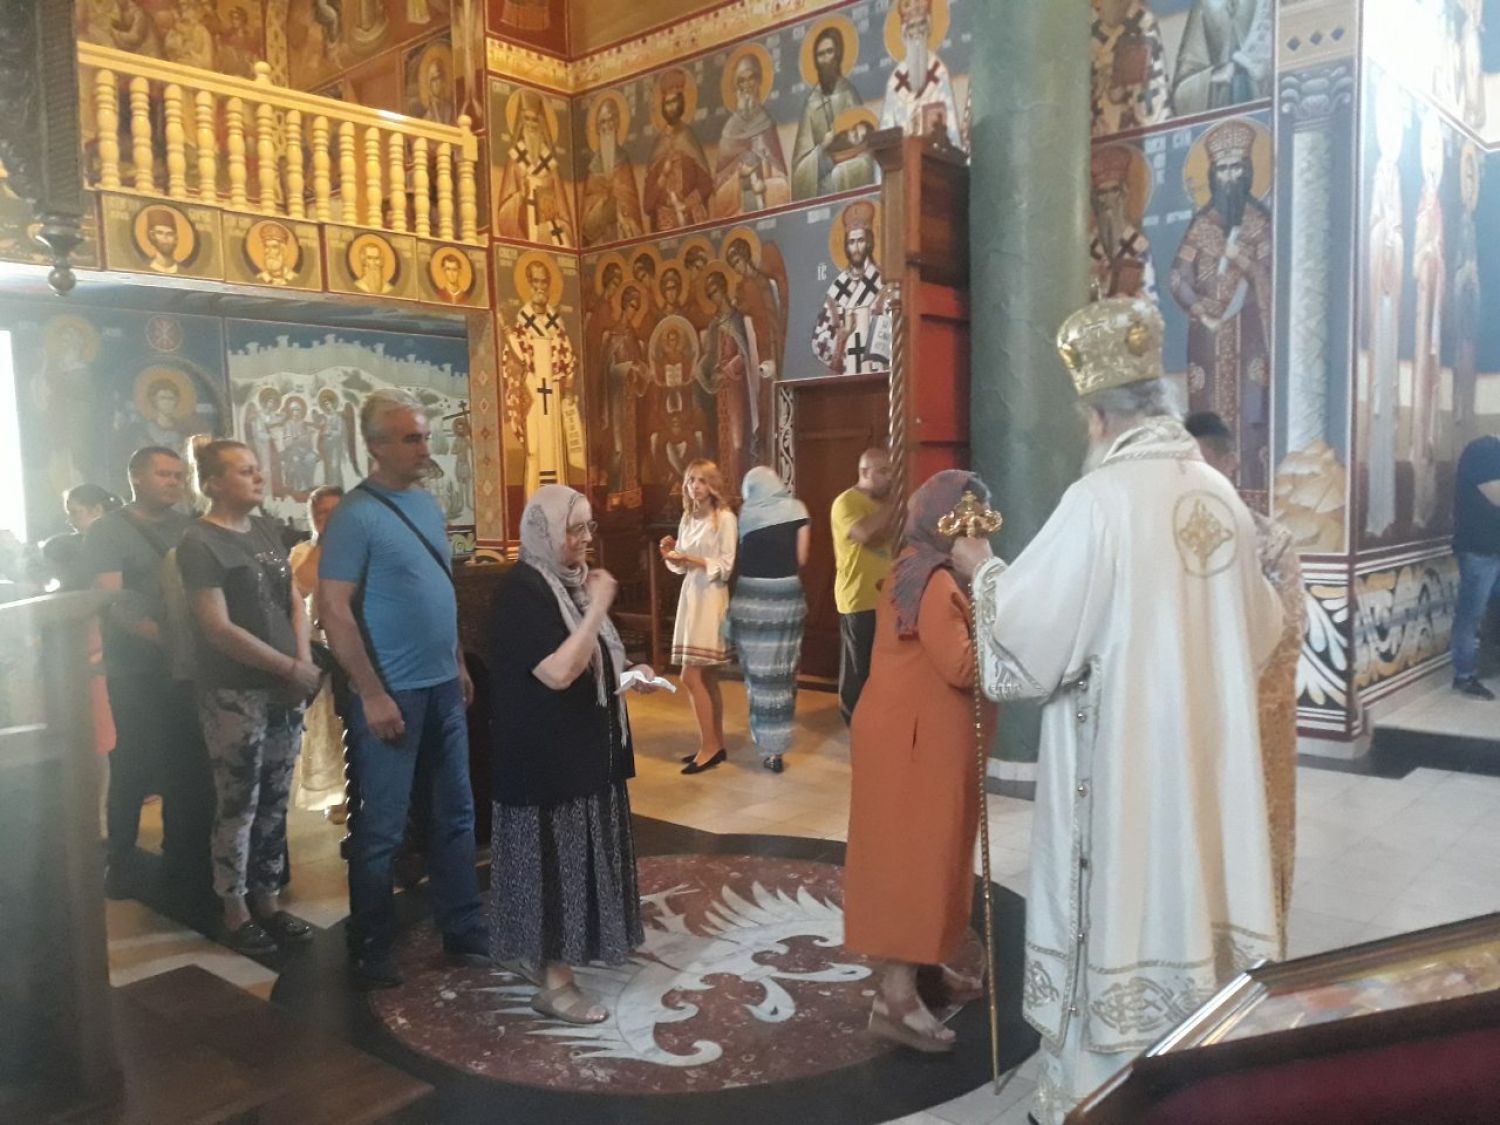 Le diocèse de ras-prizren (Église orthodoxe serbe) lance un appel à l’aide alimentaire pour le peuple serbe menacé au nord du kosovo et de la métochie